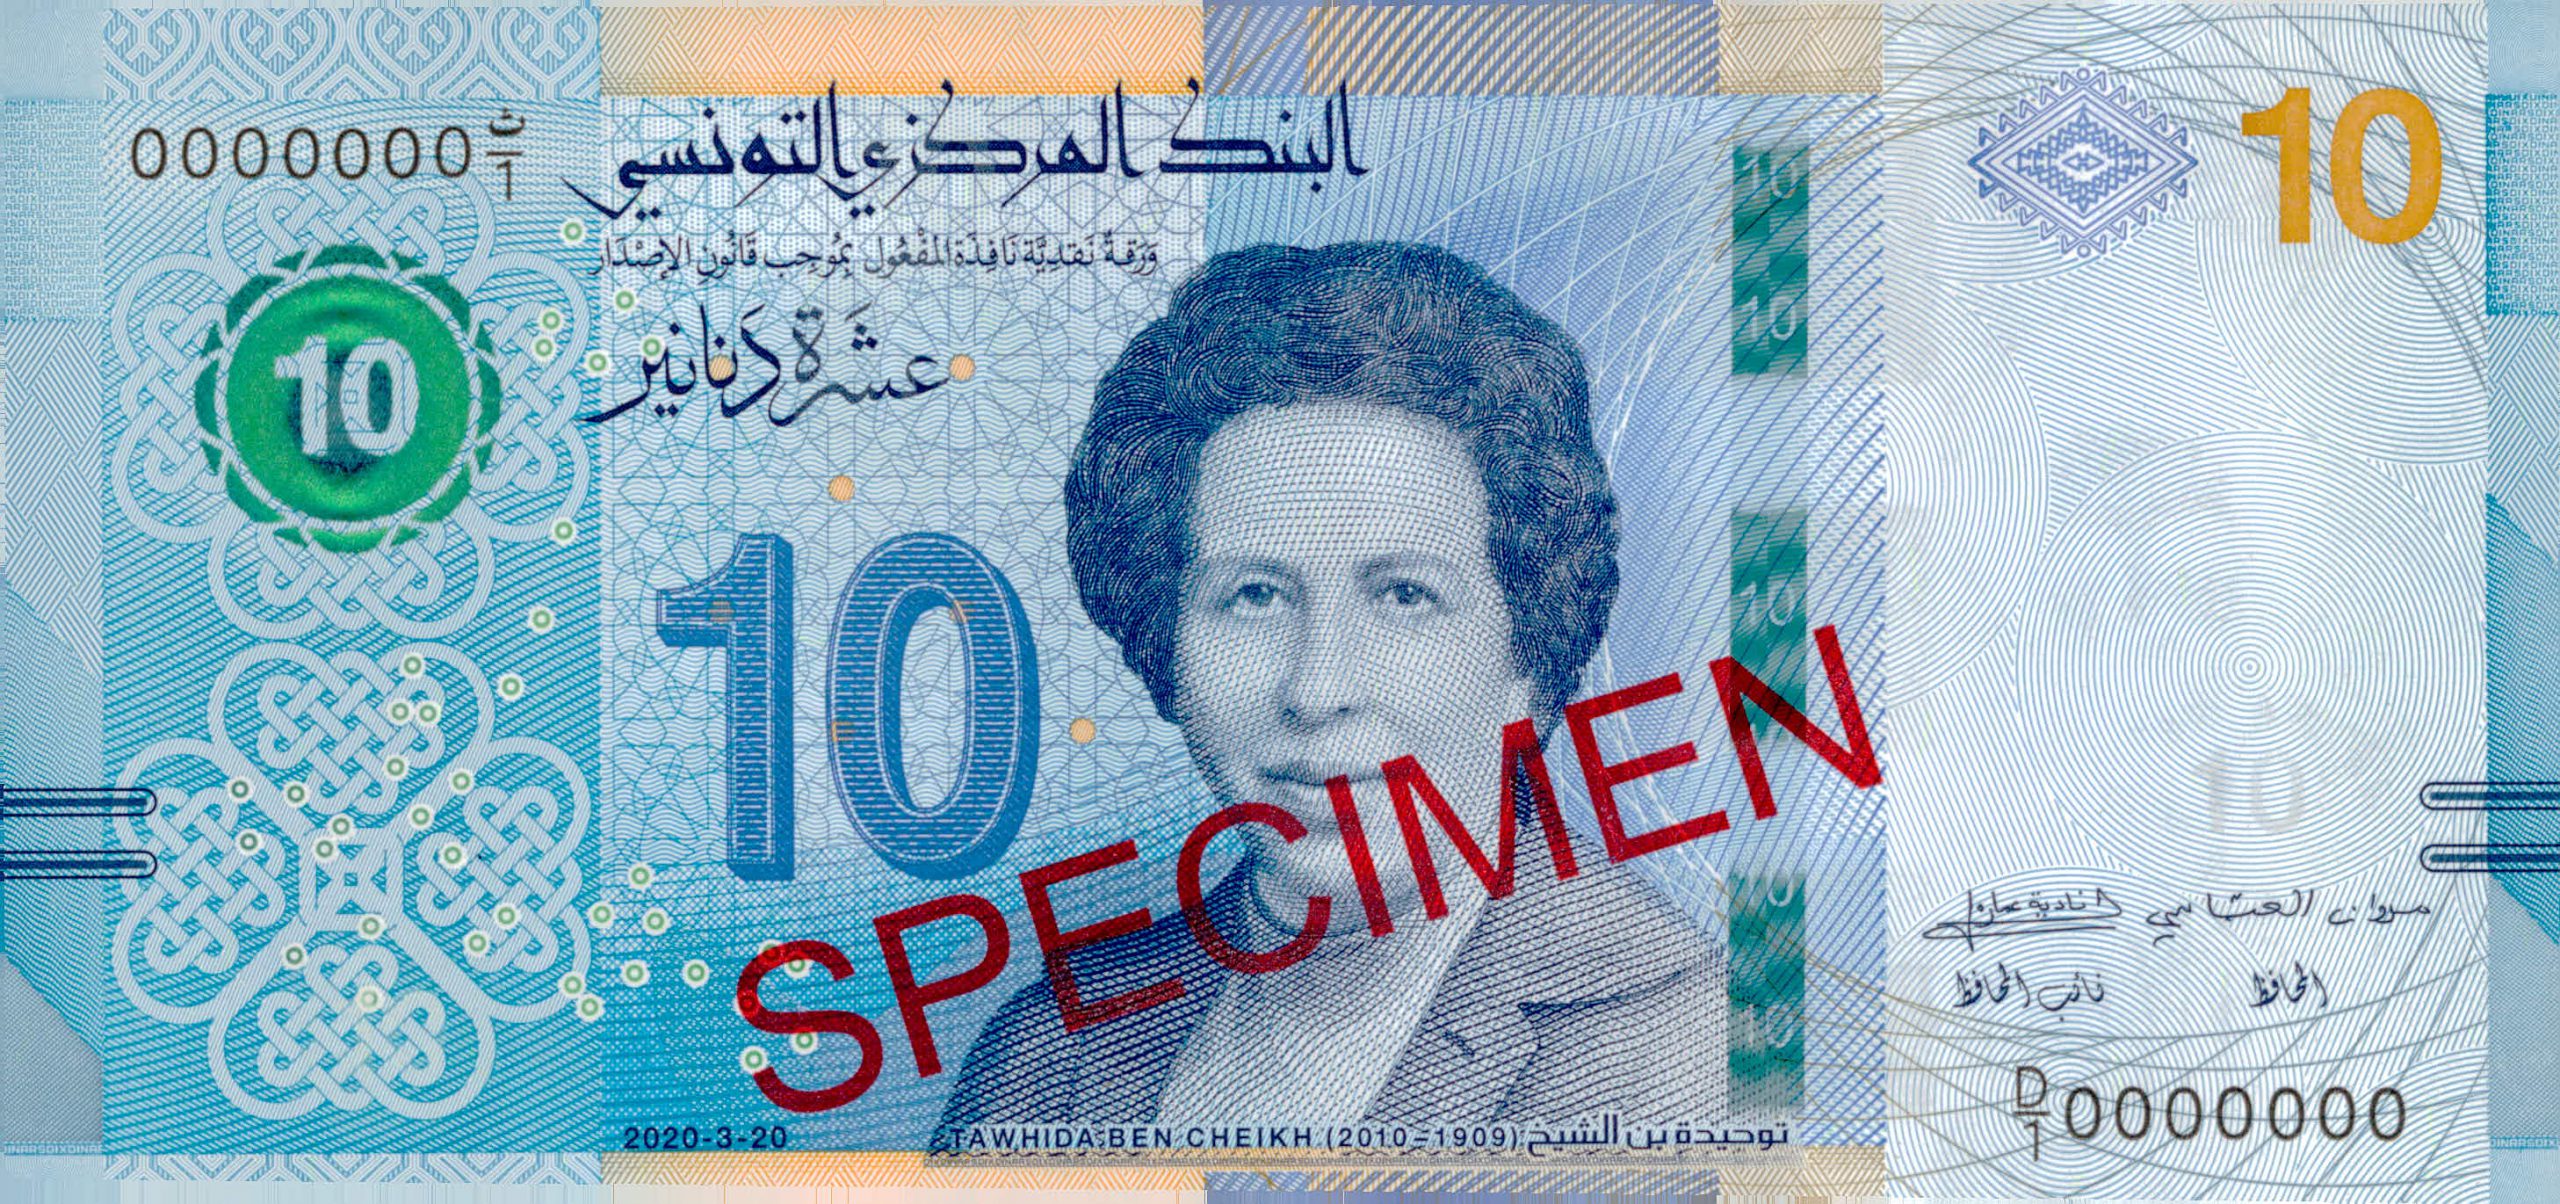 تكريما لـ"الجيش الابيض": إصدار ورقة نقدية تحمل صورة أول طبيبة بتونس والعالم العربي